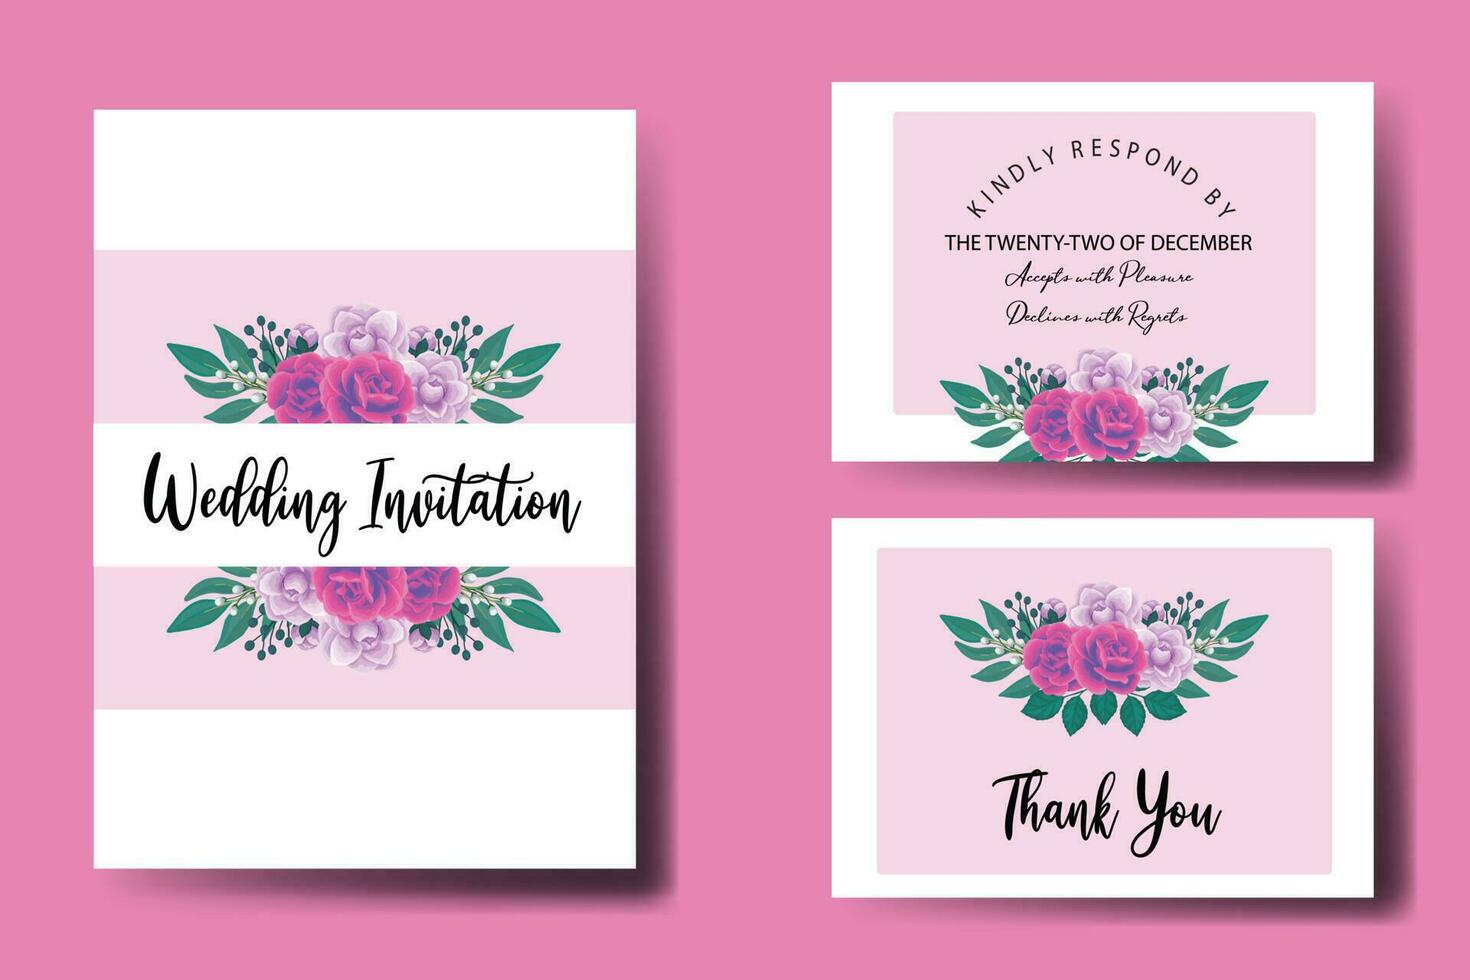 Boda invitación marco colocar, floral acuarela digital mano dibujado púrpura anémona flor diseño invitación tarjeta modelo vector